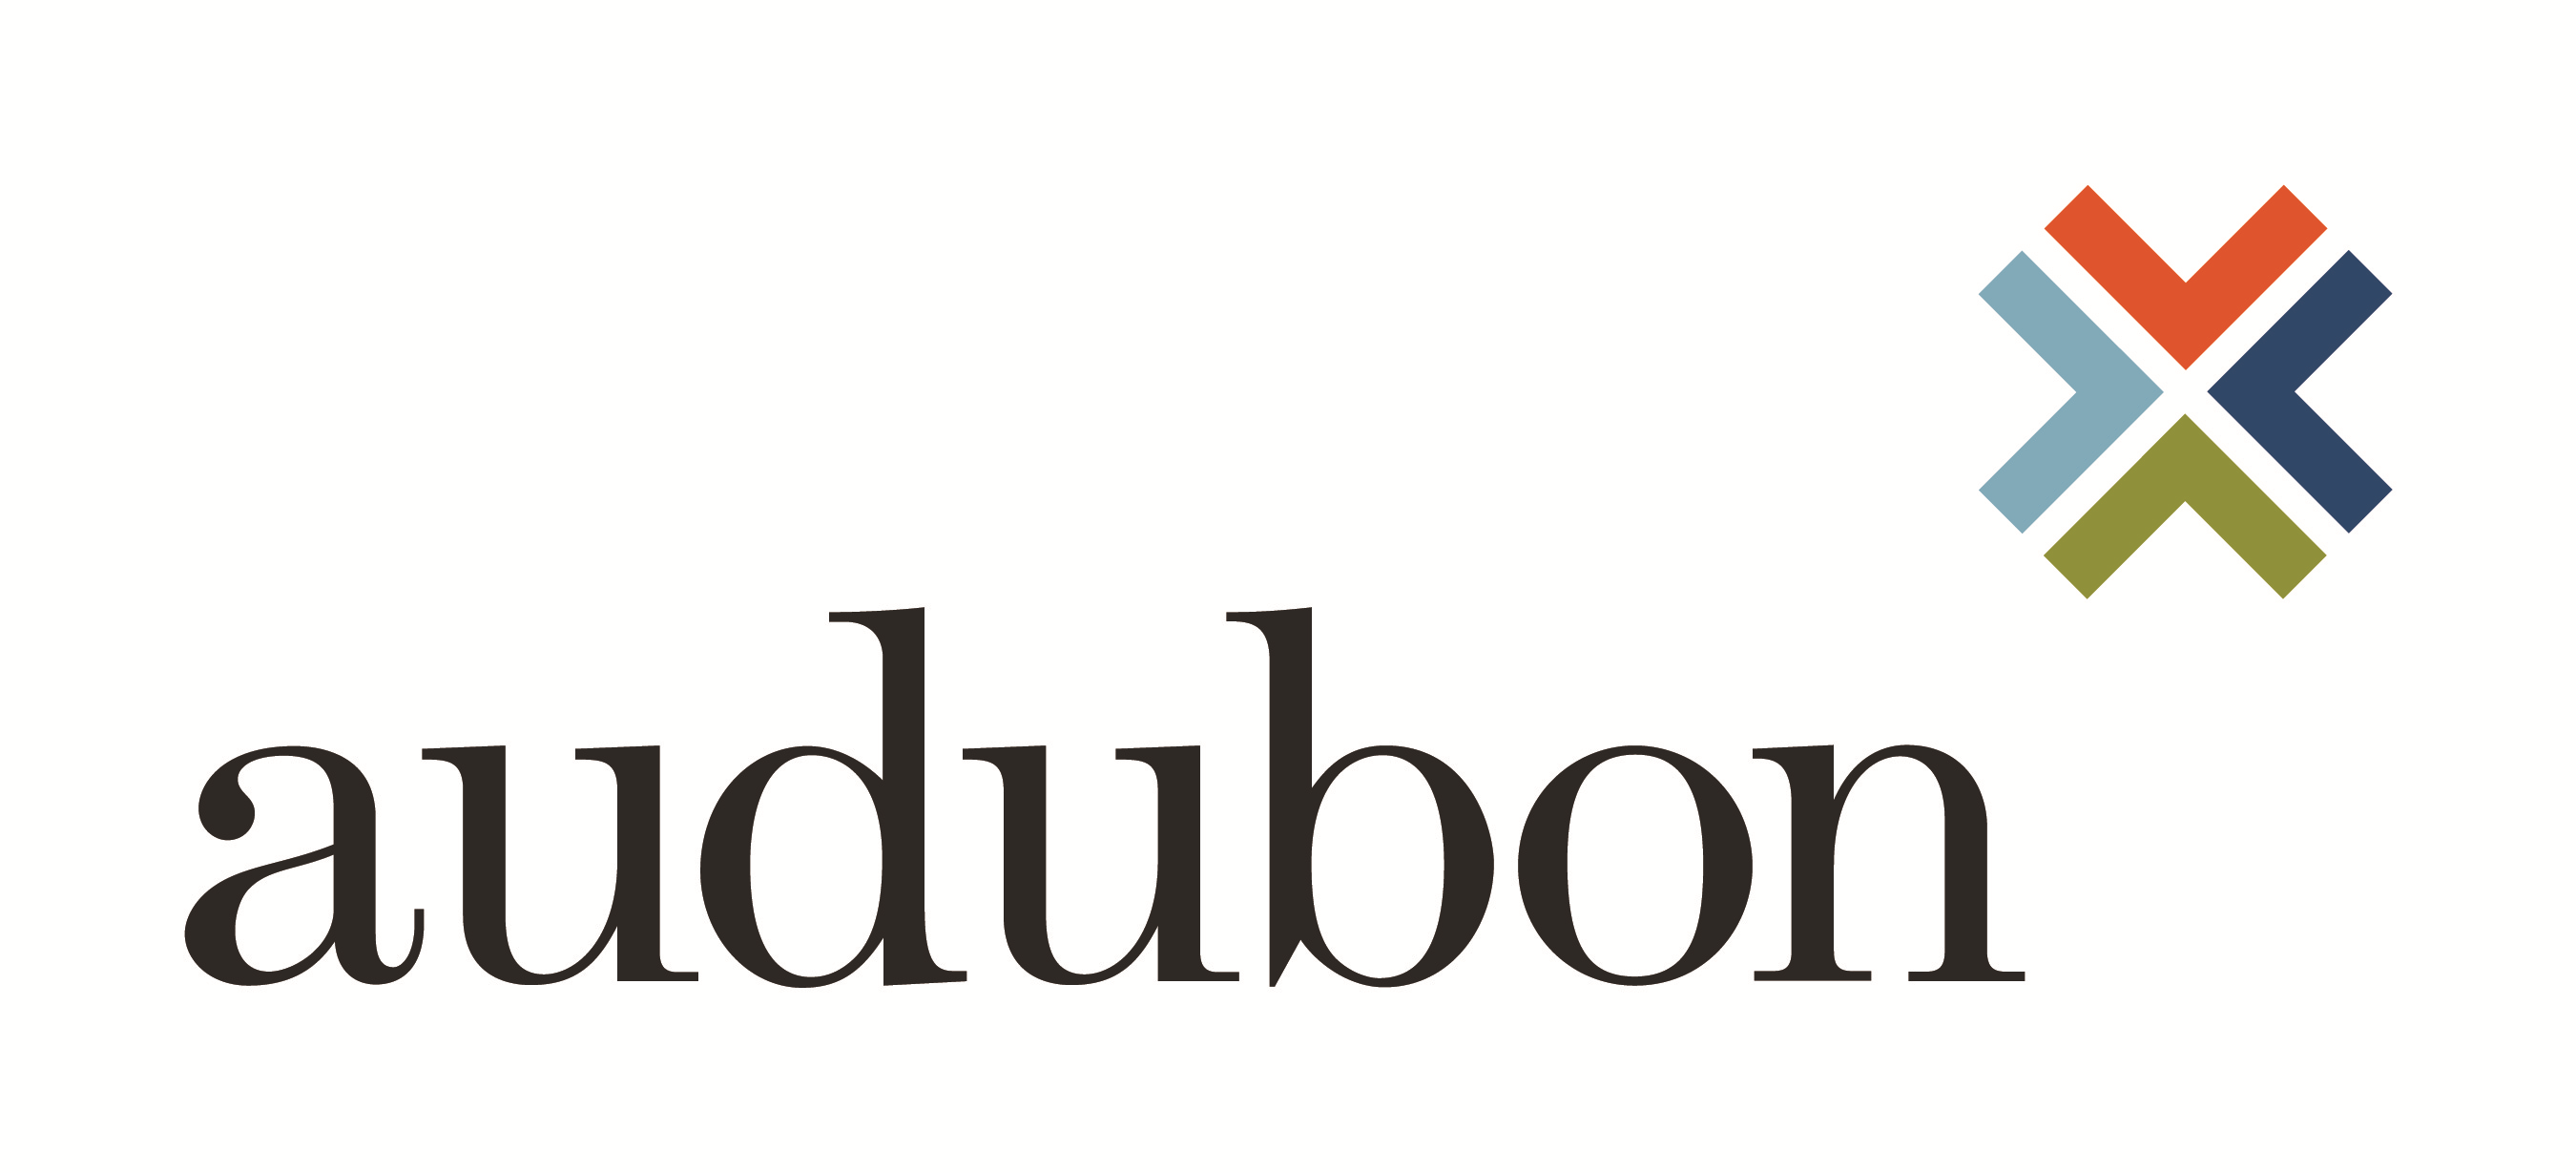 Audubon Engineering Company Company Logo